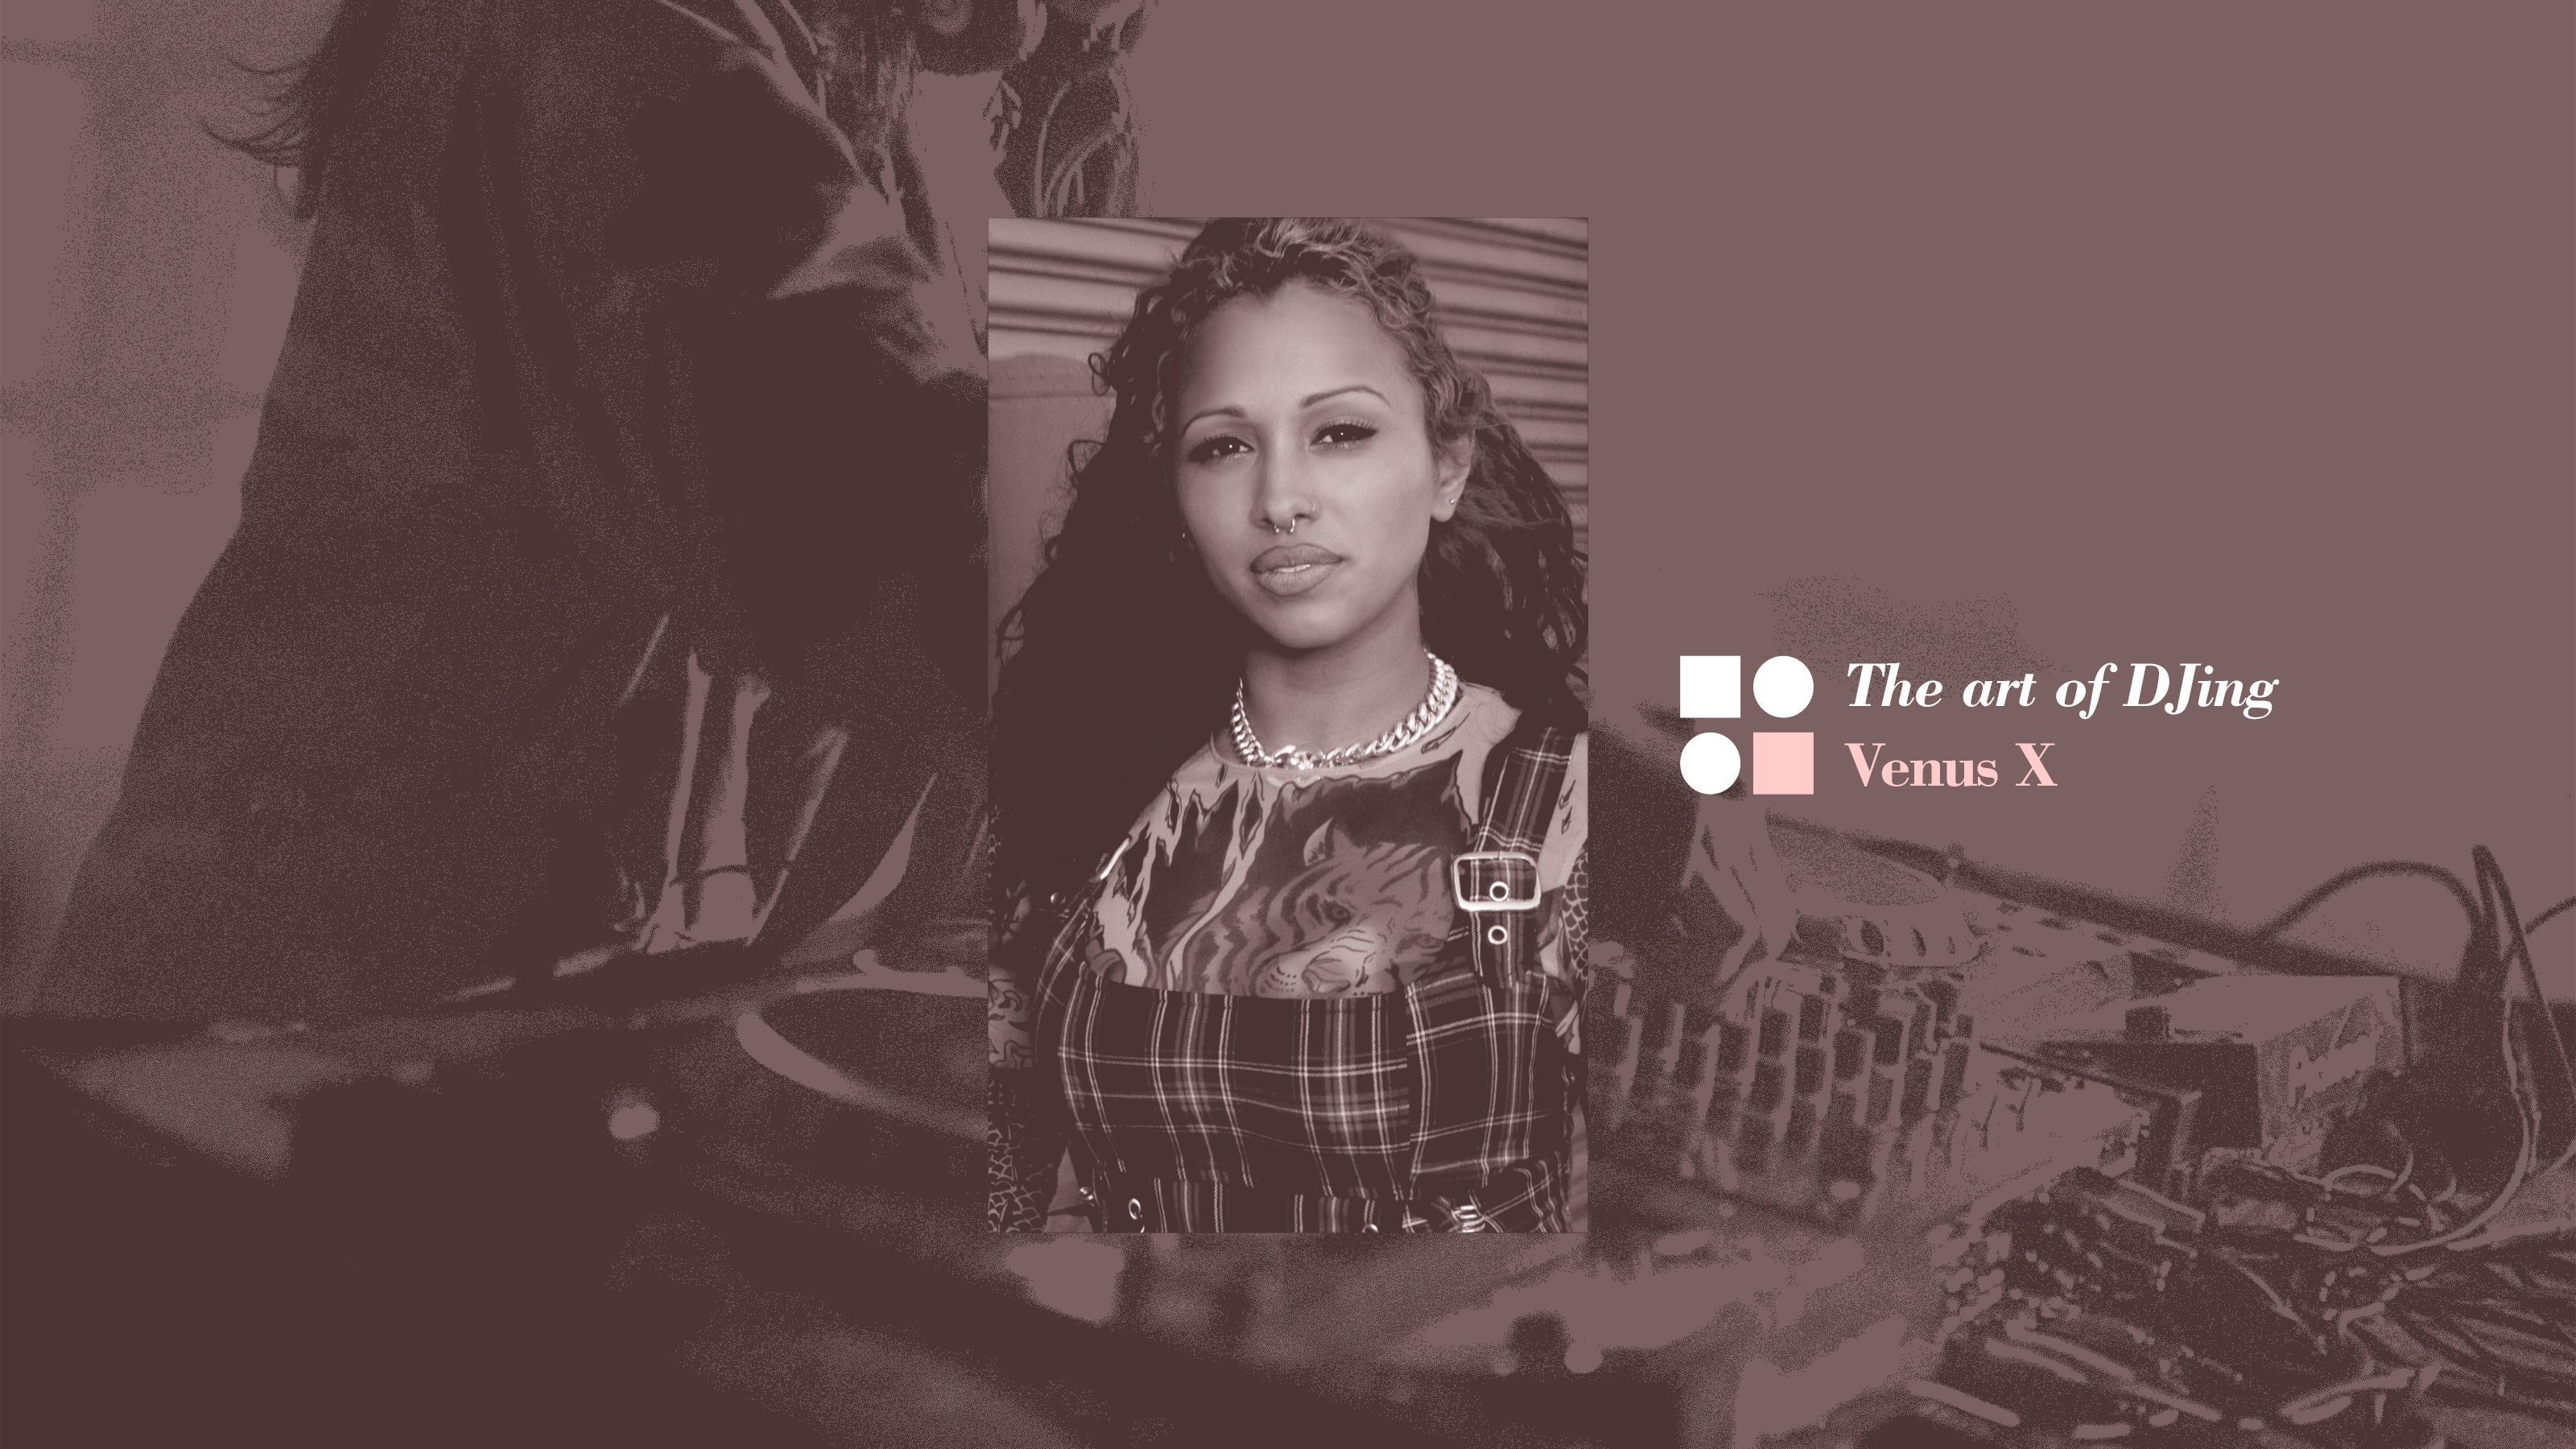 The art of DJing: Venus X